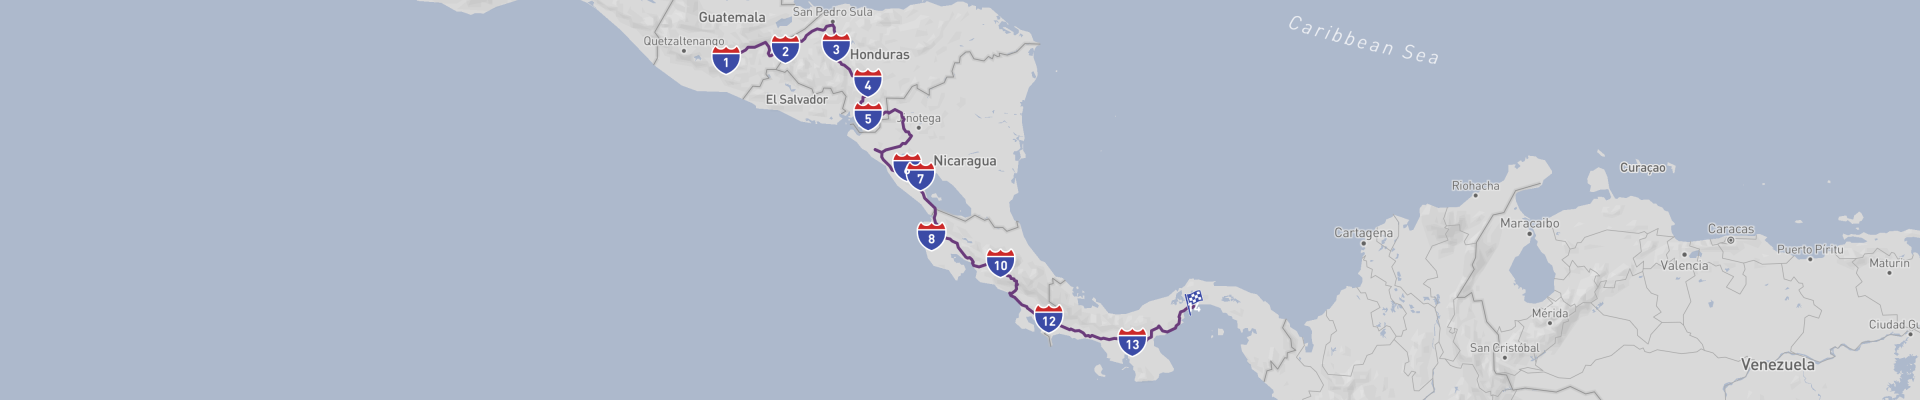 Voyages en voiture classiques à travers l'Amérique centrale